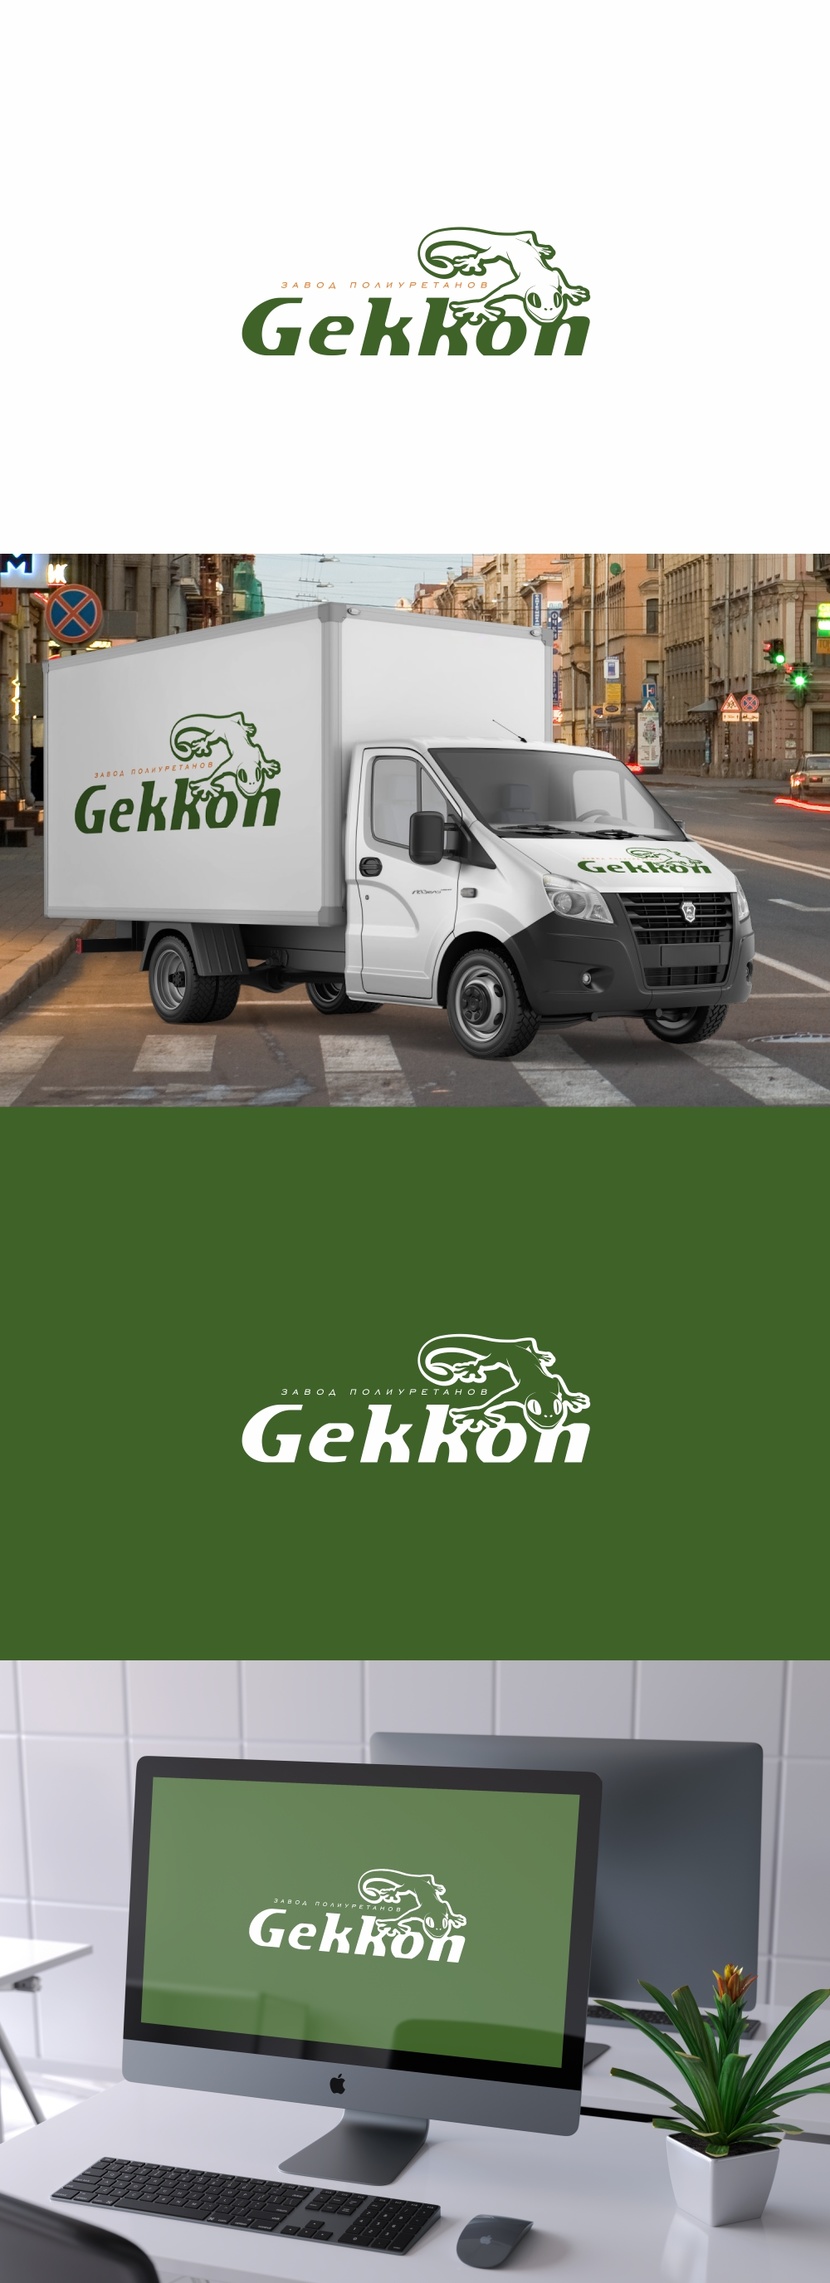 Логотип для производства полиуретановых материалов марки "Gekkon"  -  автор Андрей Мартынович